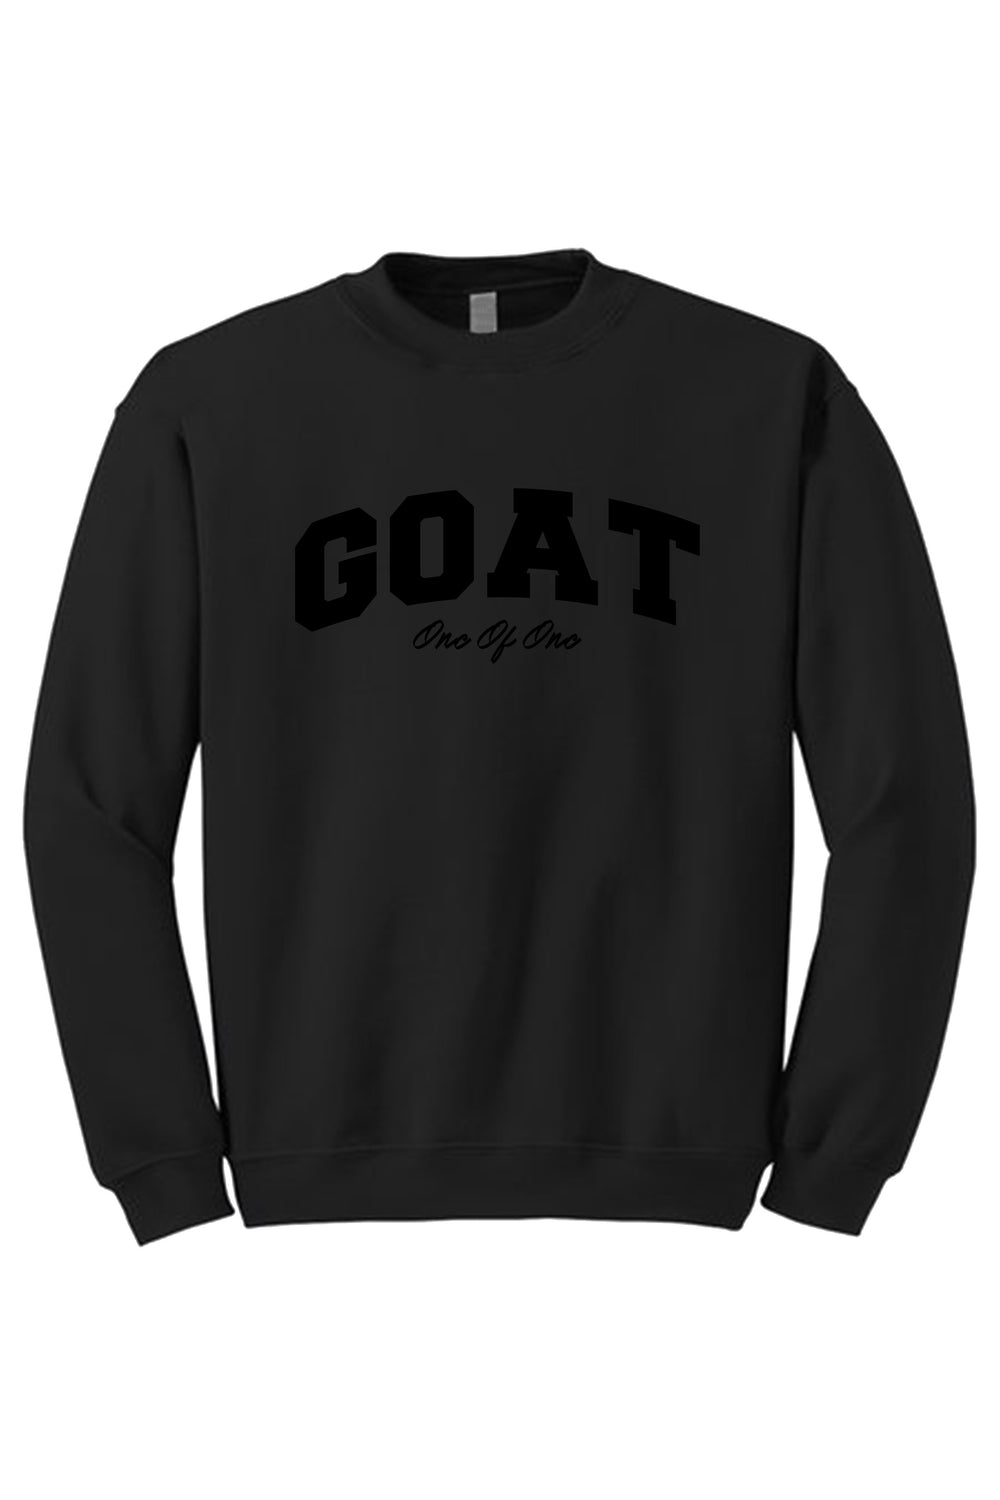 Goat Crewneck Sweatshirt (Black Logo) - Zamage